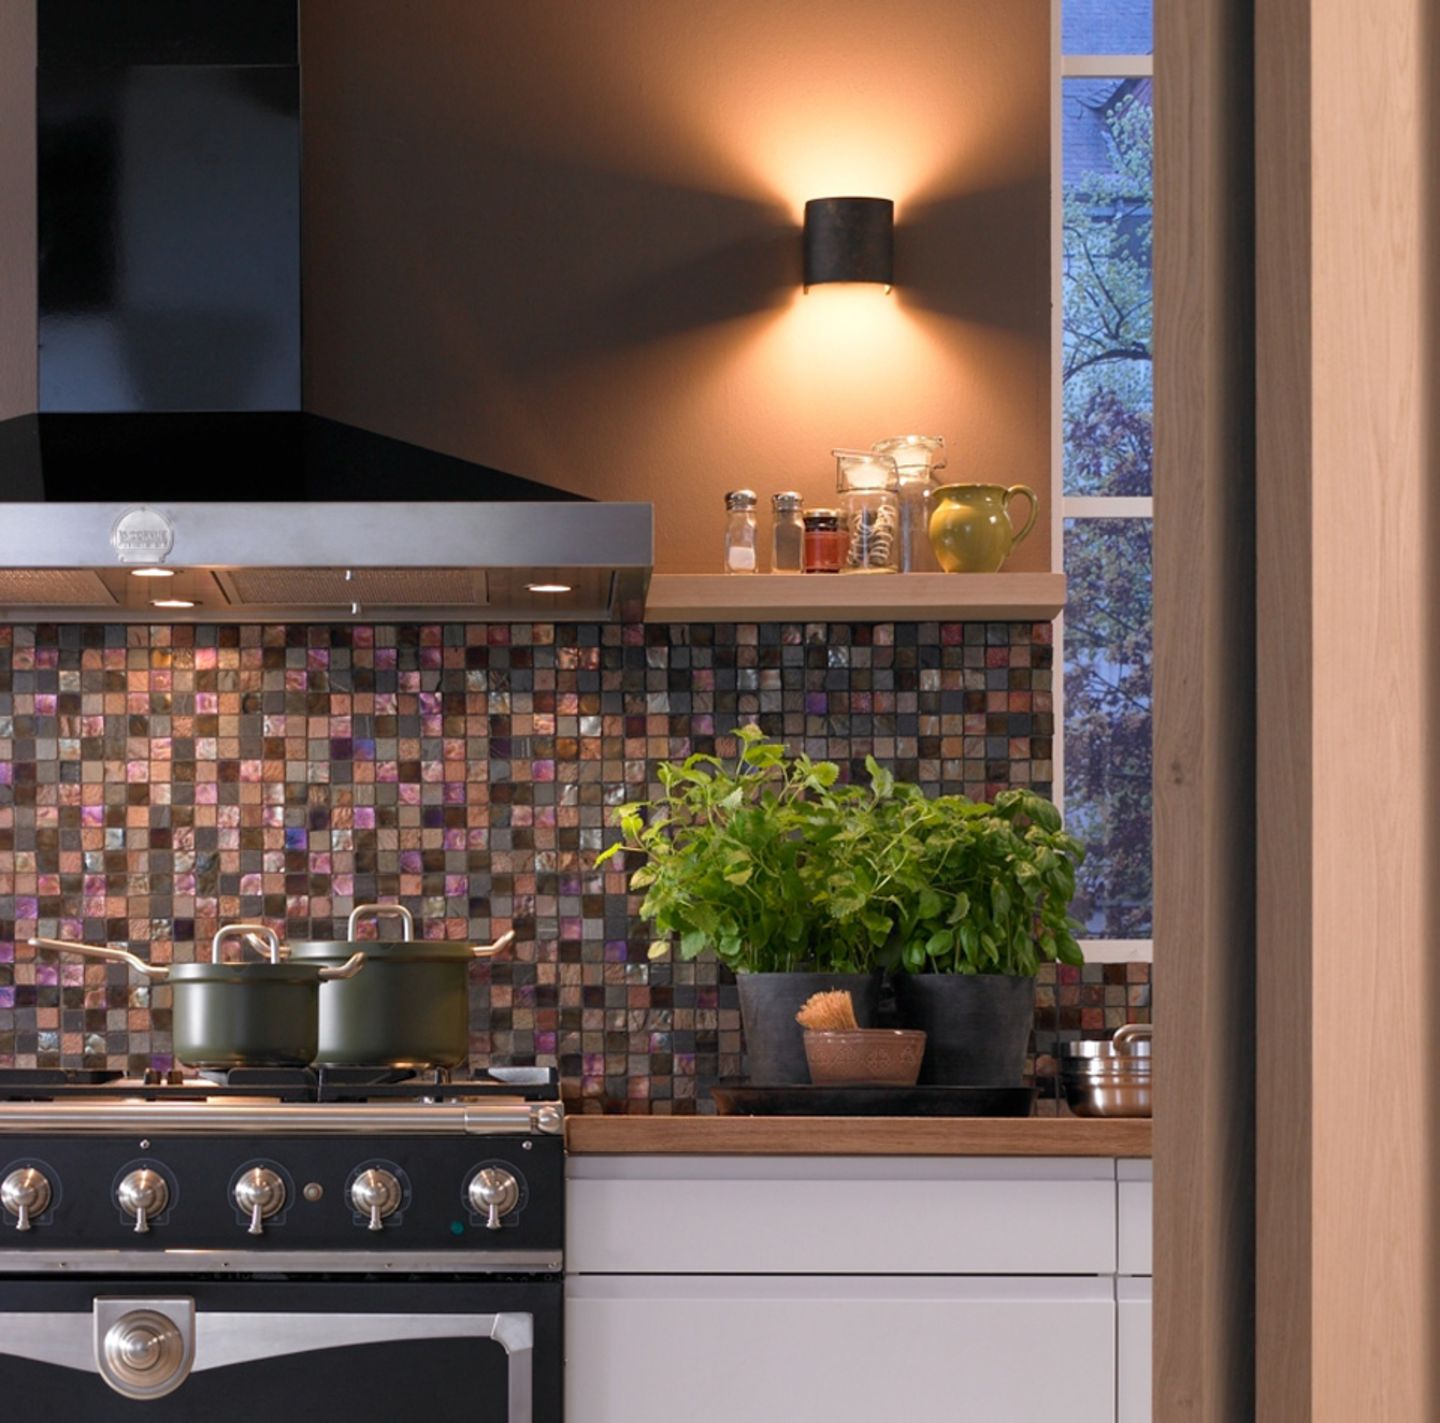 Küche mit Mosaik und warmen Licht